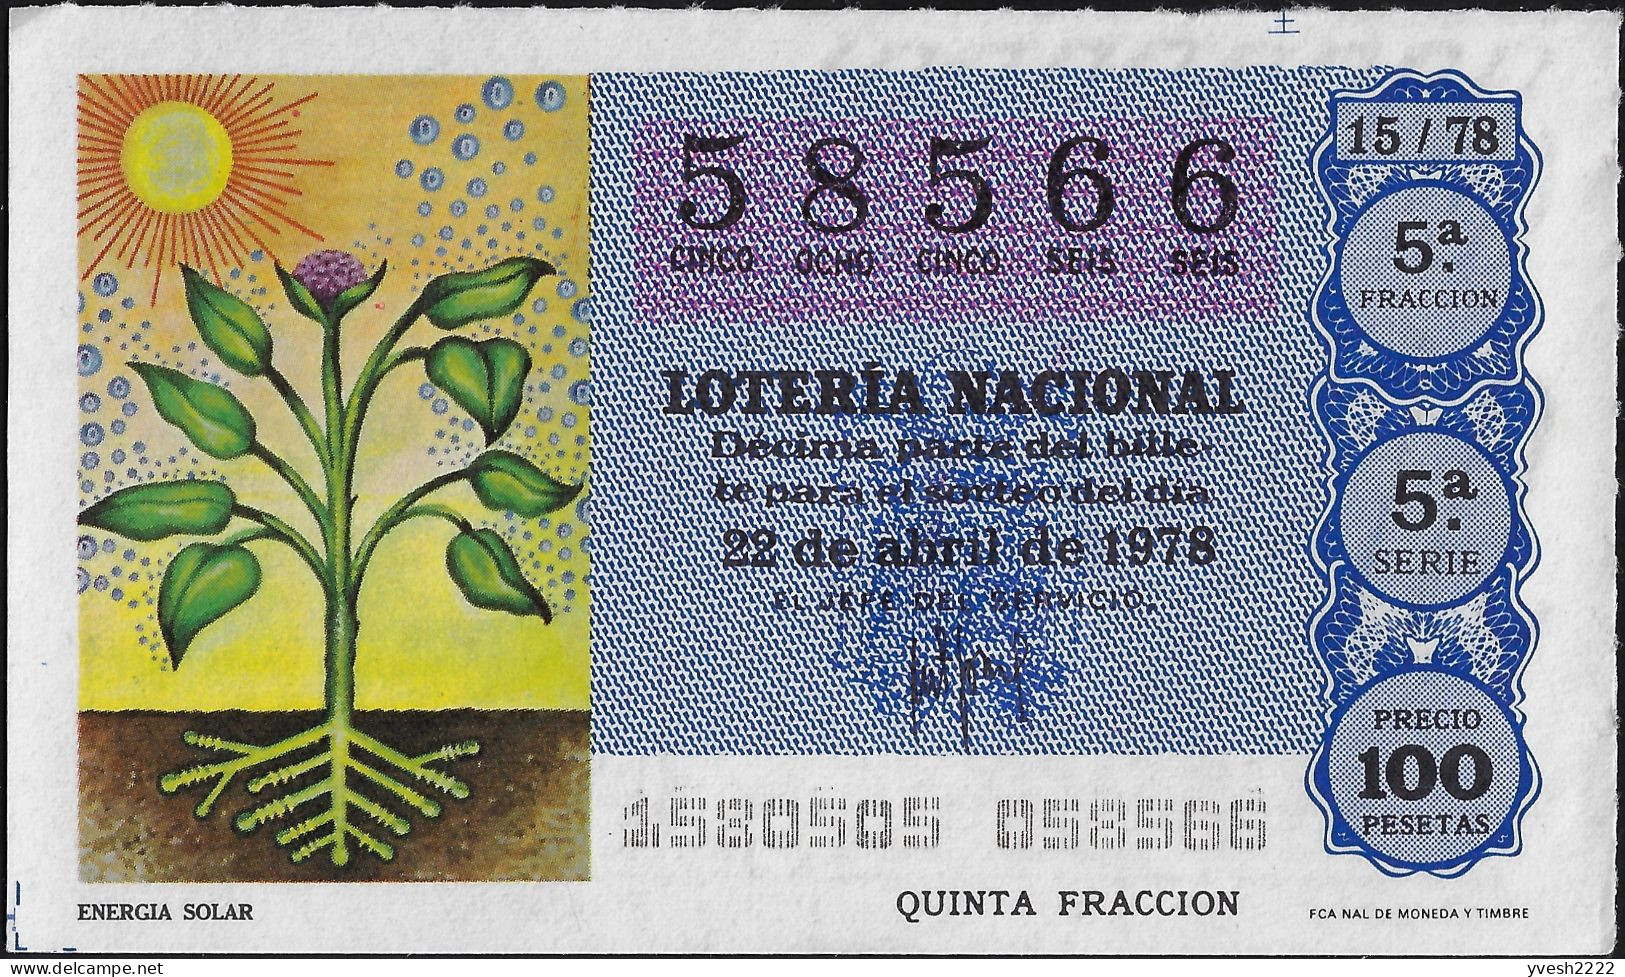 Espagne 1978. 4 Billets De Loterie Nationale. Actions Du Soleil. Chauffage, Plantes, Panneaux Solaires Sur Satellites - Billets De Loterie